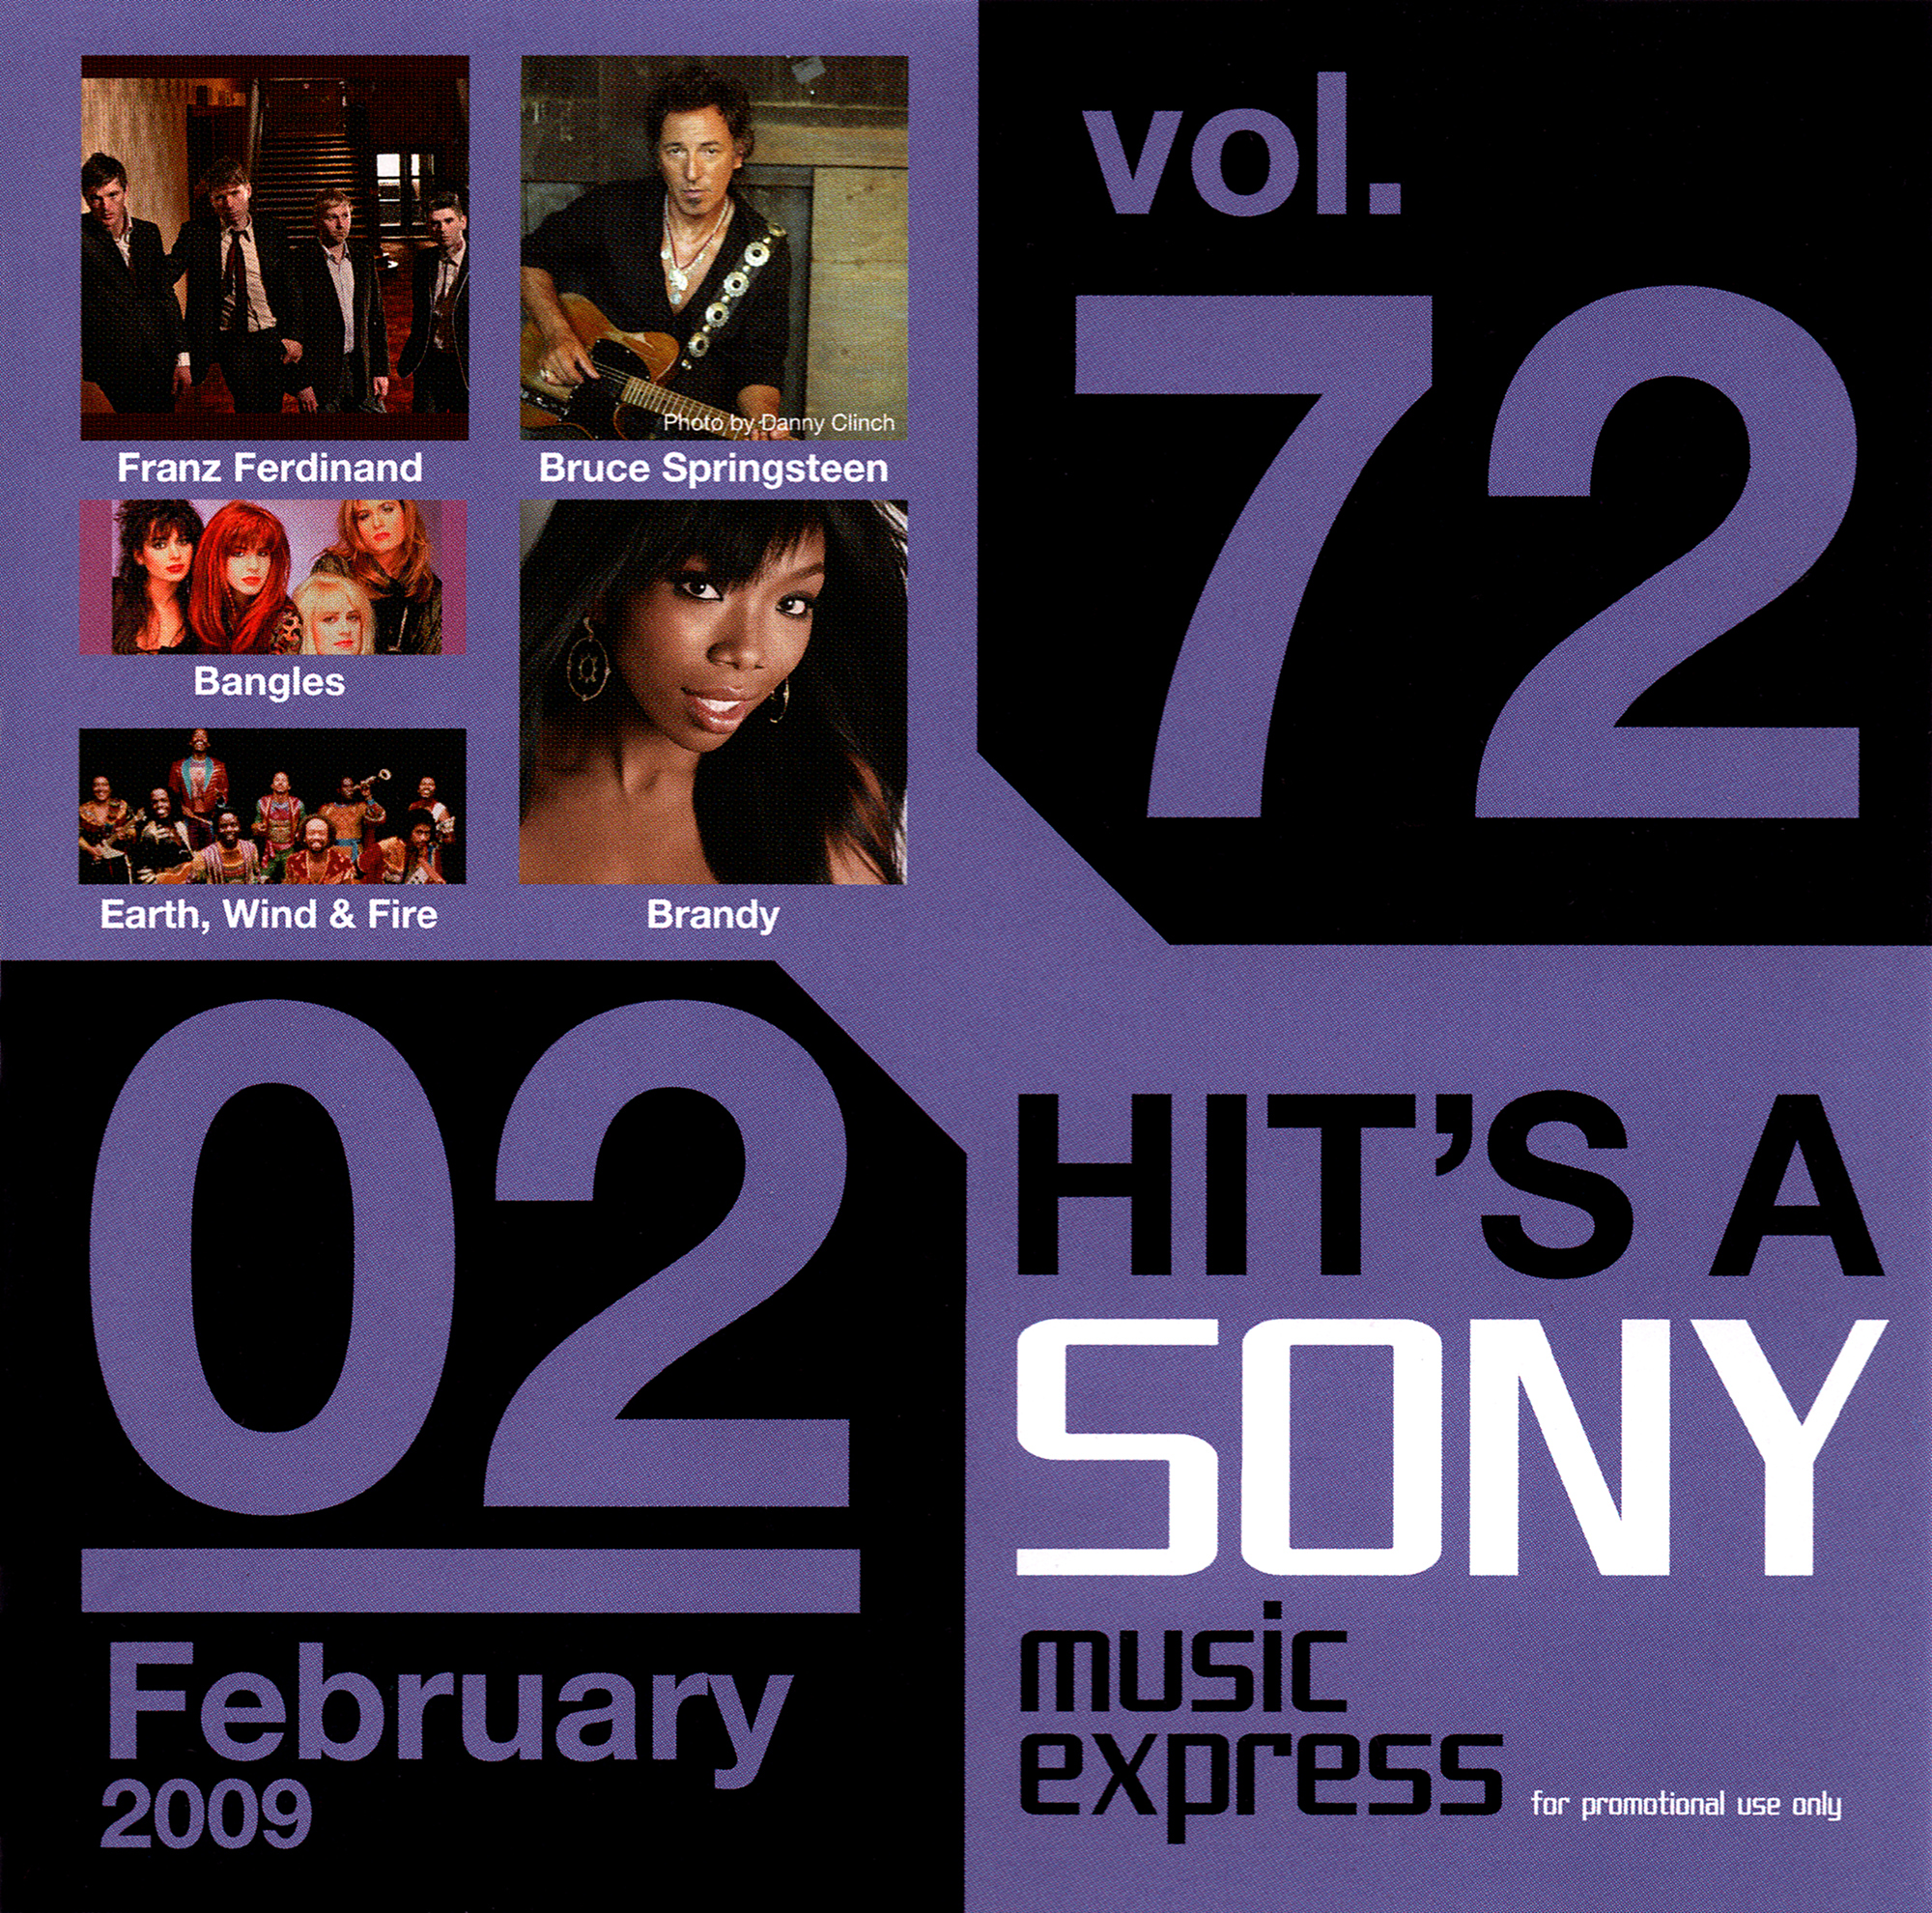 非売品オムニバスCD『HIT'S A SONY music express for promotional use only vol.72 02 February 2009』高画質CDジャケット画像 (ジャケ写)